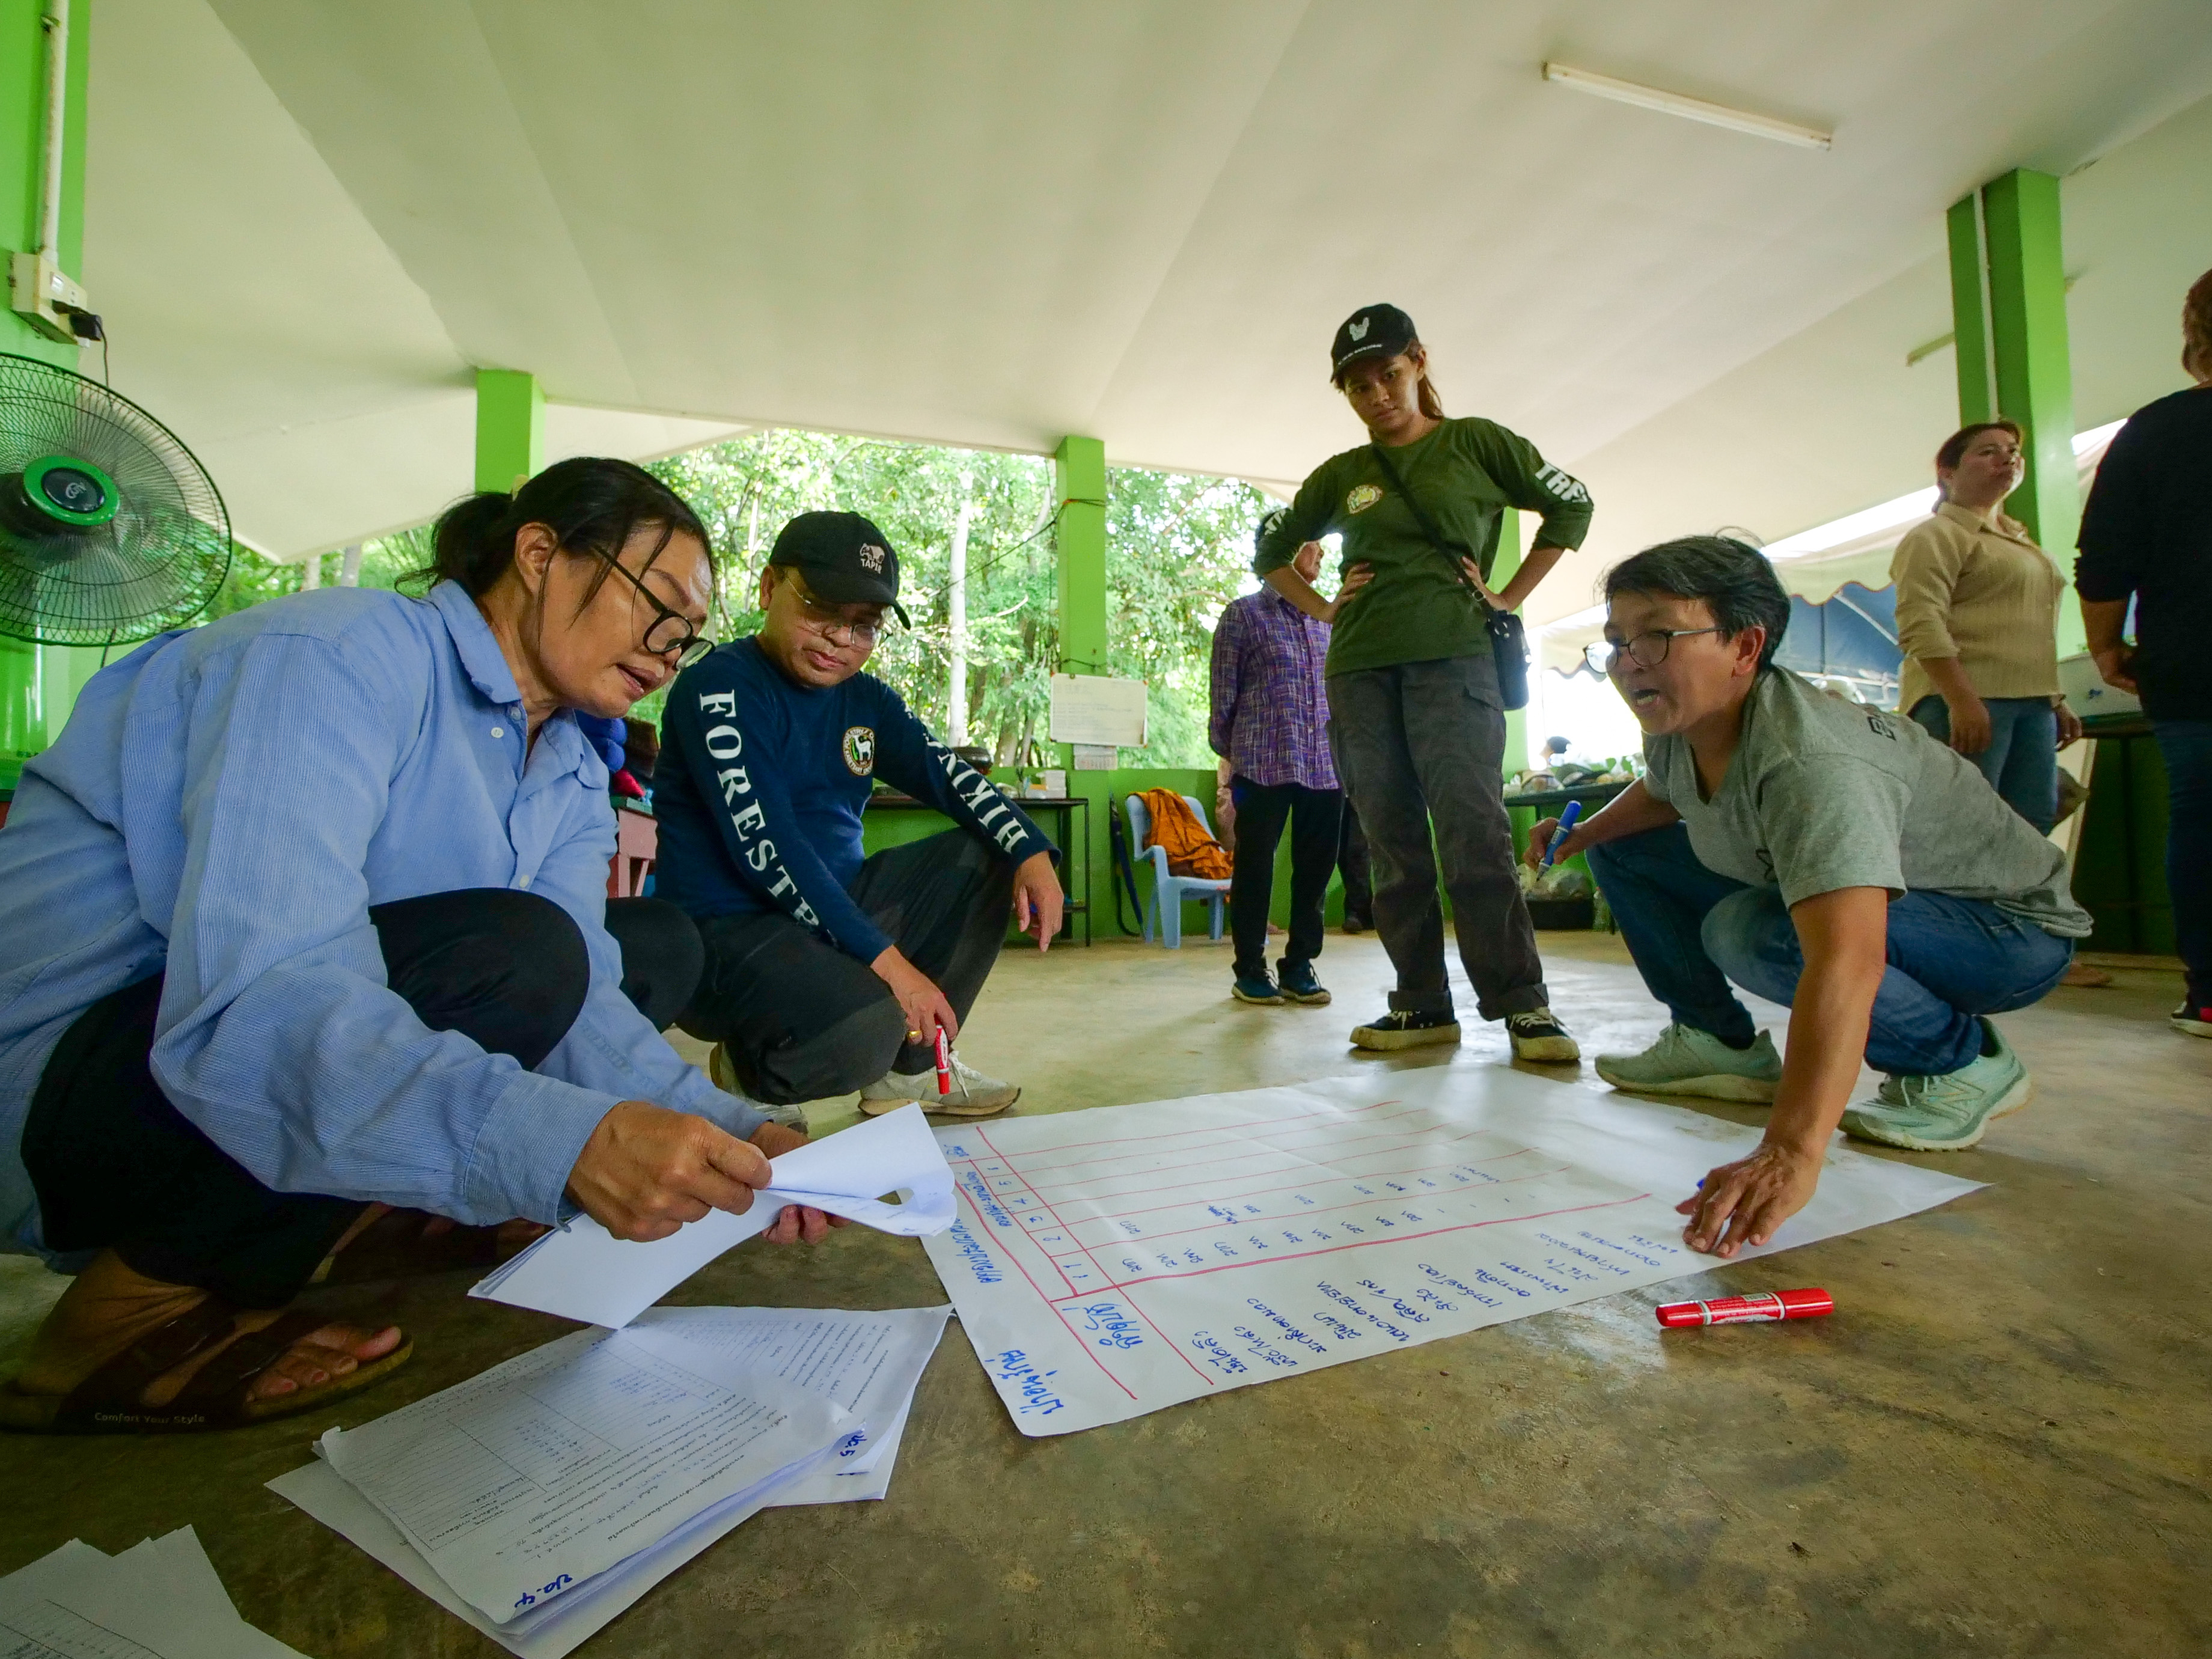 สมาชิกในชุมชนเก็บข้อมูลความหลากหลายทางชีวภาพเพื่อนำไปทำแผนการจัดการป่าชุมชน